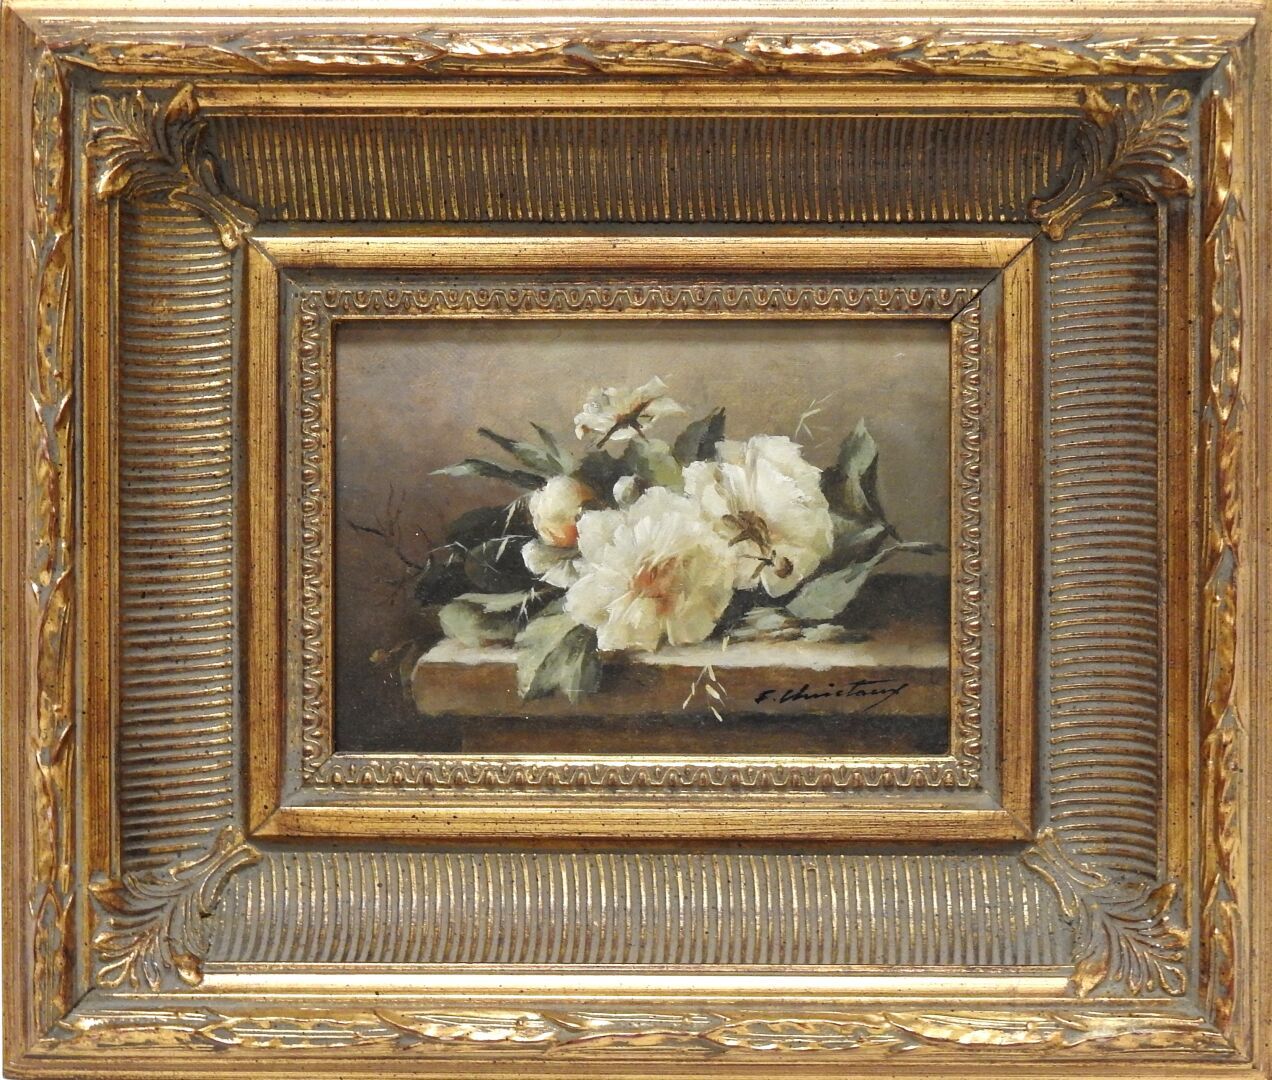 Null F.CHRISTAUNY - 20世纪
夹板上的花束。
布面油画。右下方有签名。
12,5 x 17,5厘米。
磨损和撕裂。